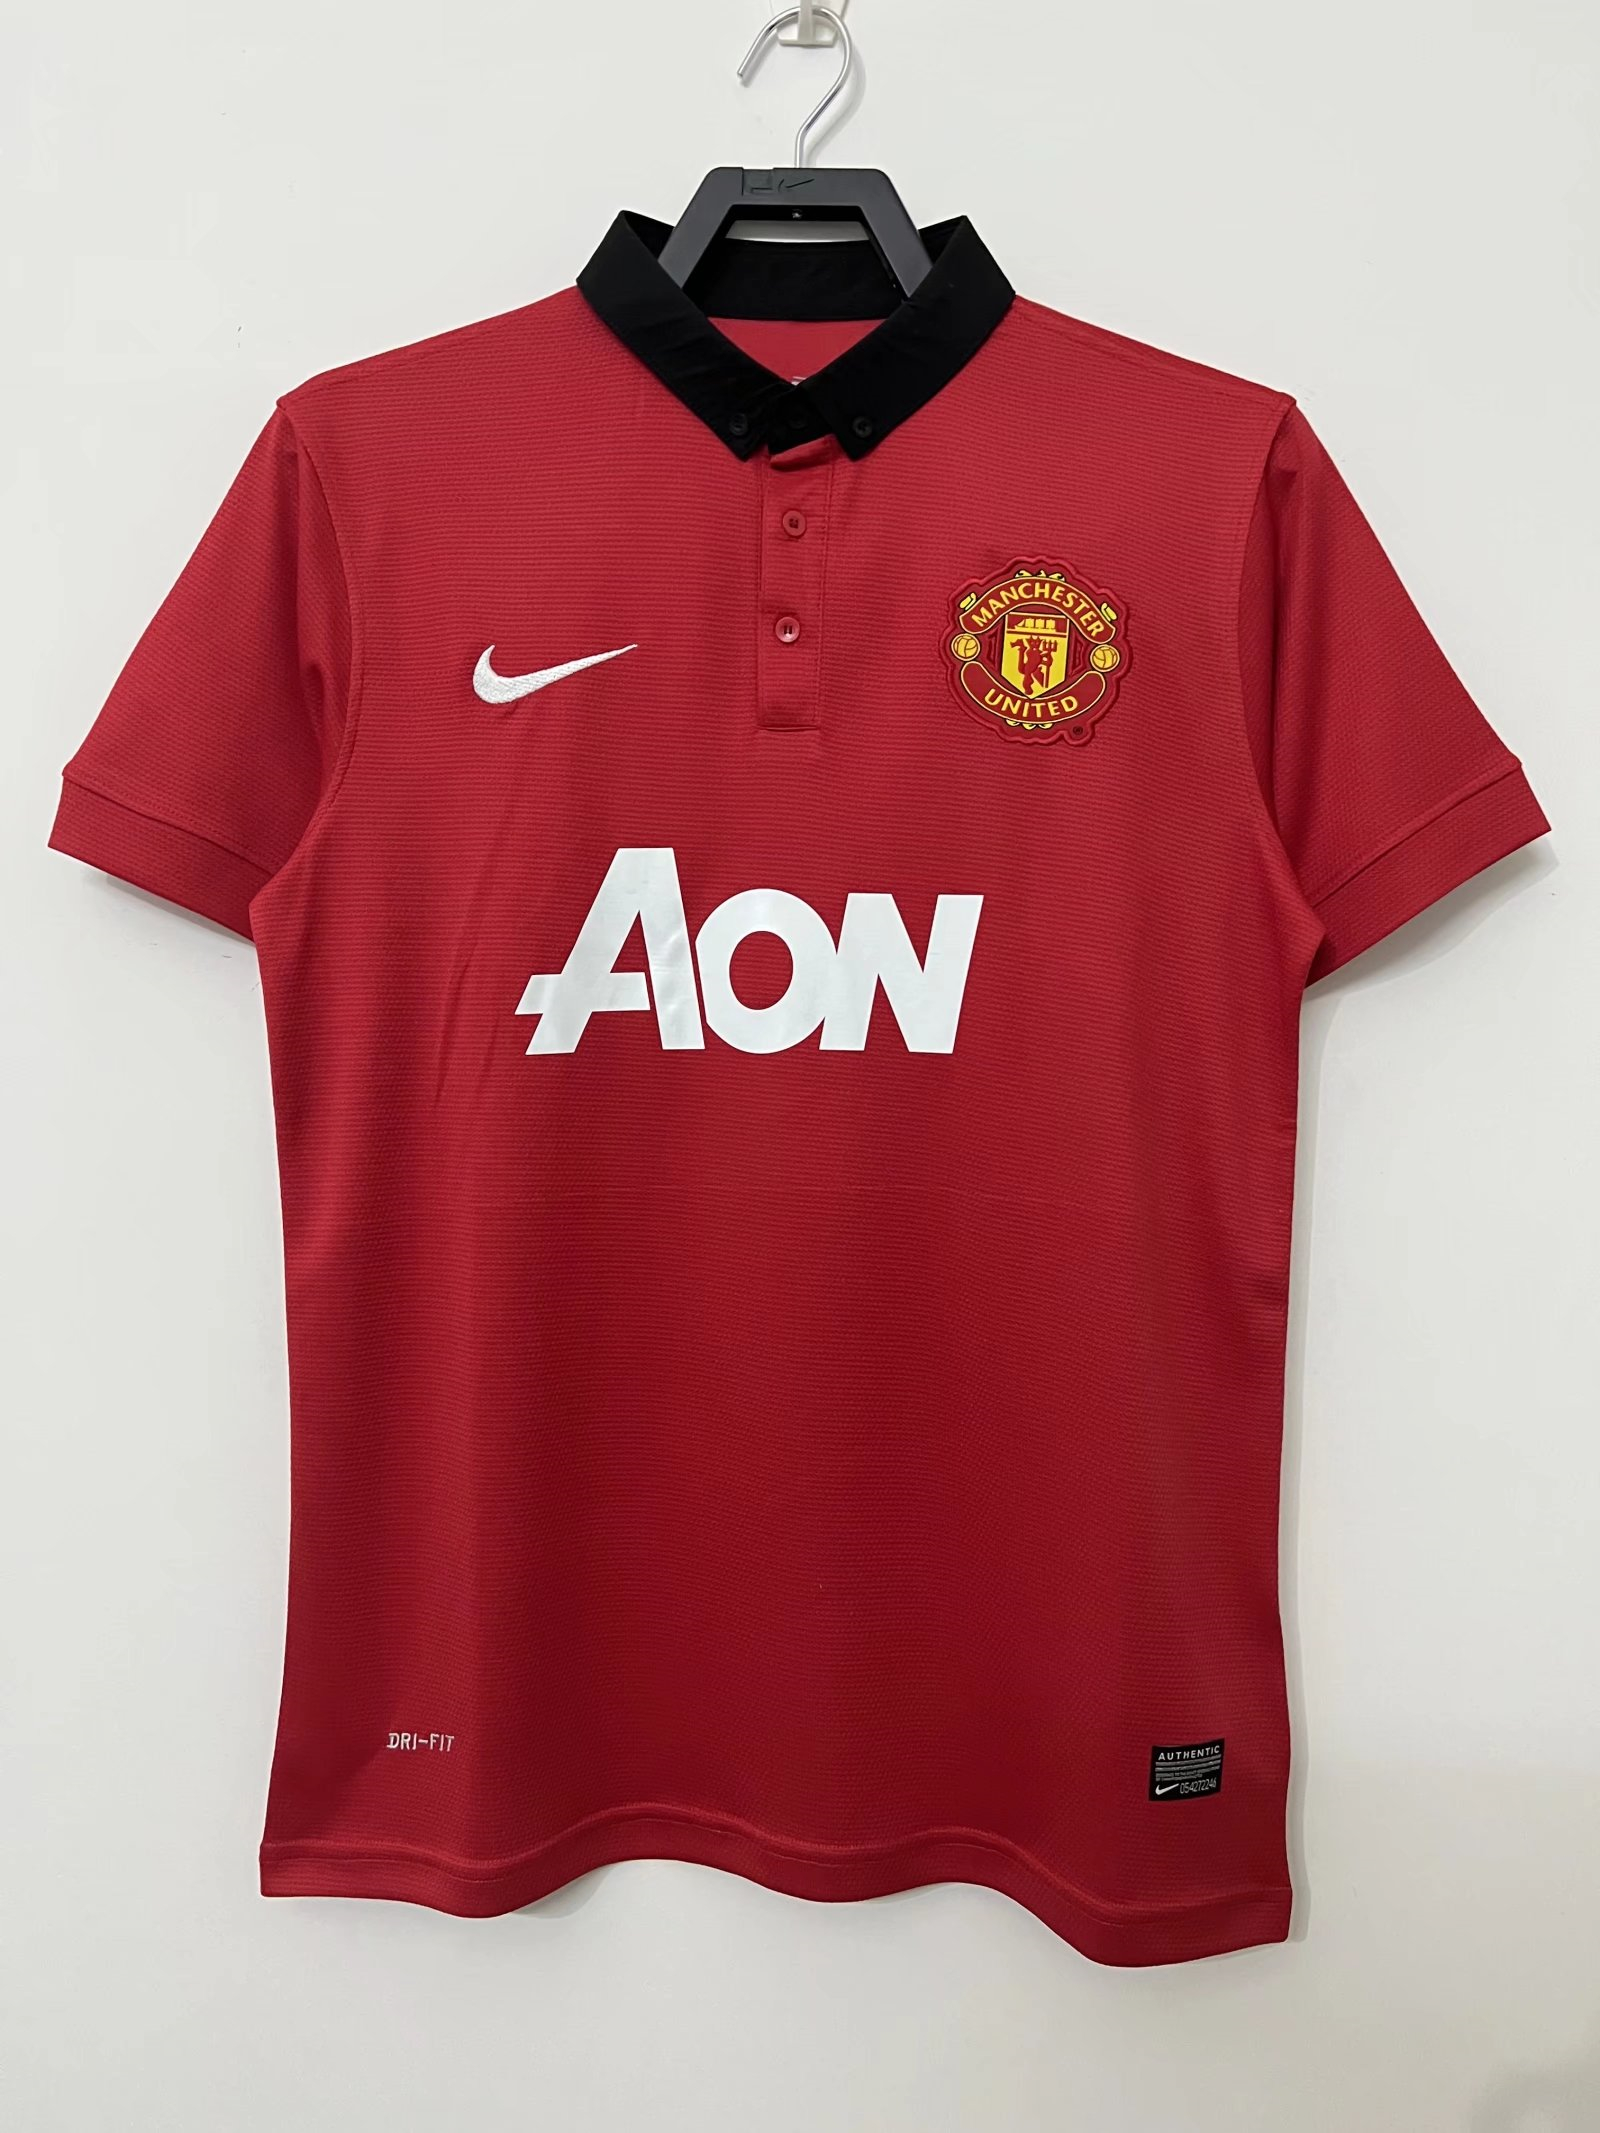 2013/14 Manchester United Retro Home Man Soccer Football Kit